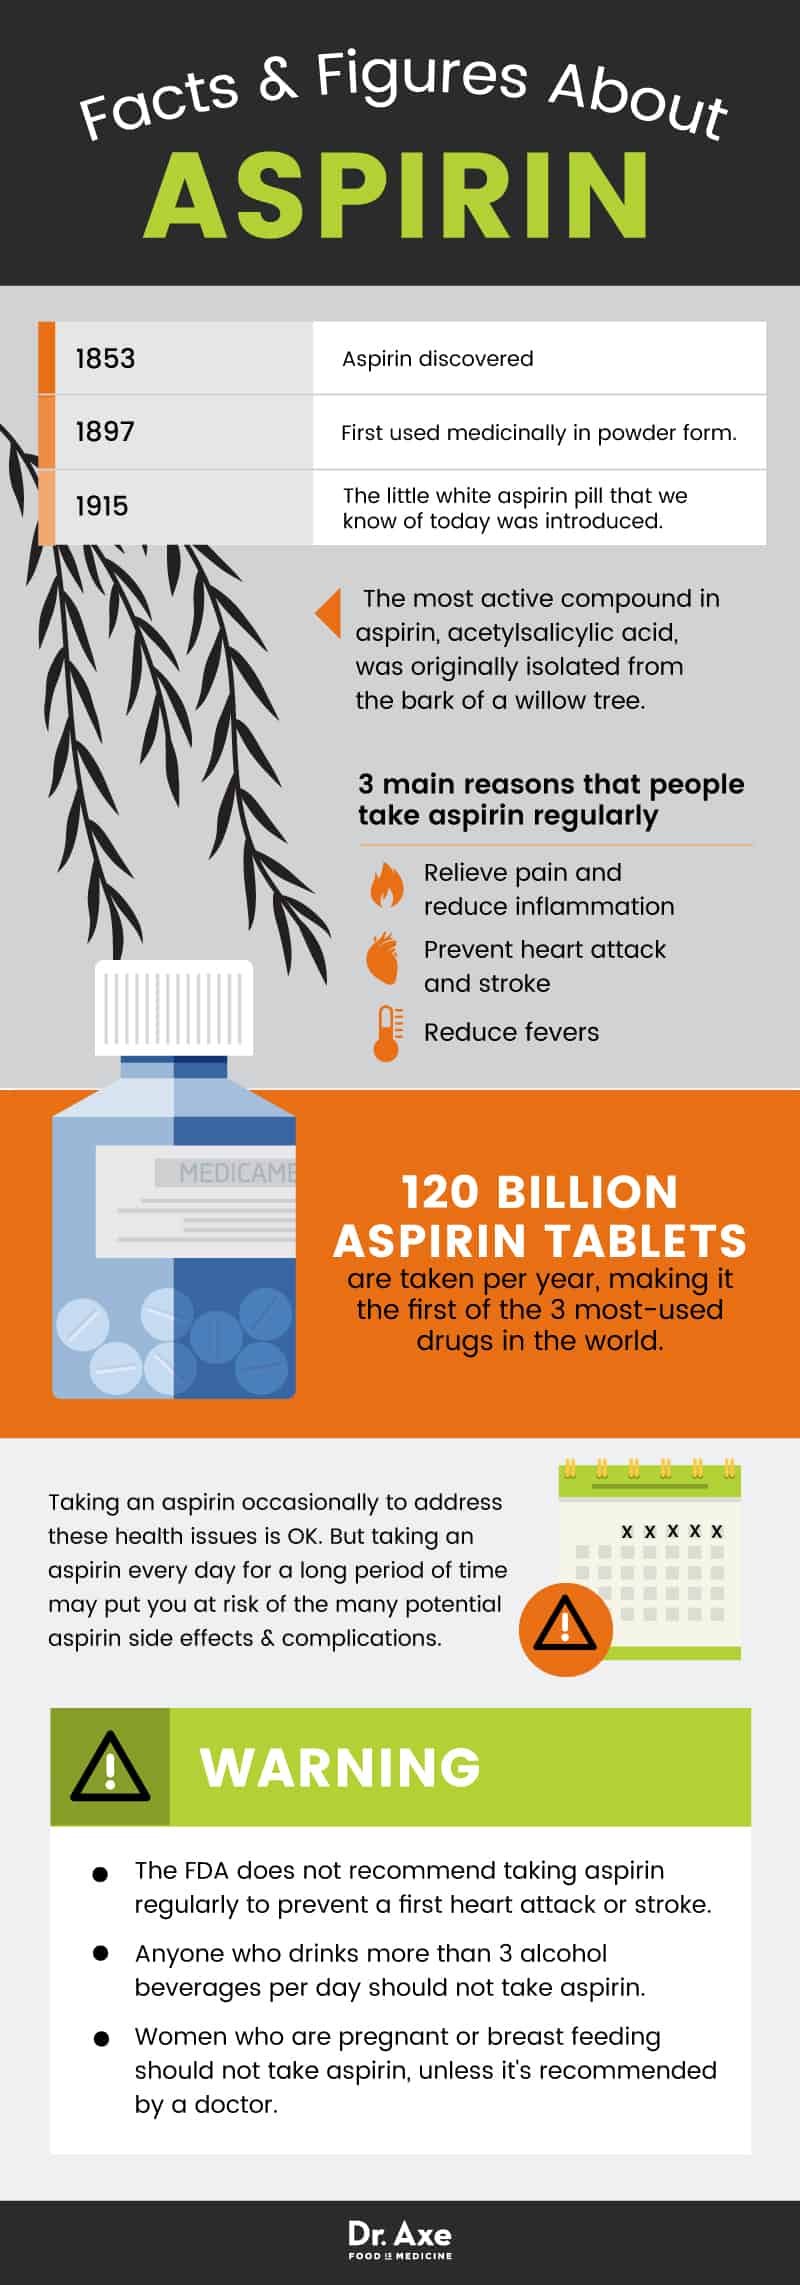 Aspirin biverkningar: aspirin fakta - Dr. Axe